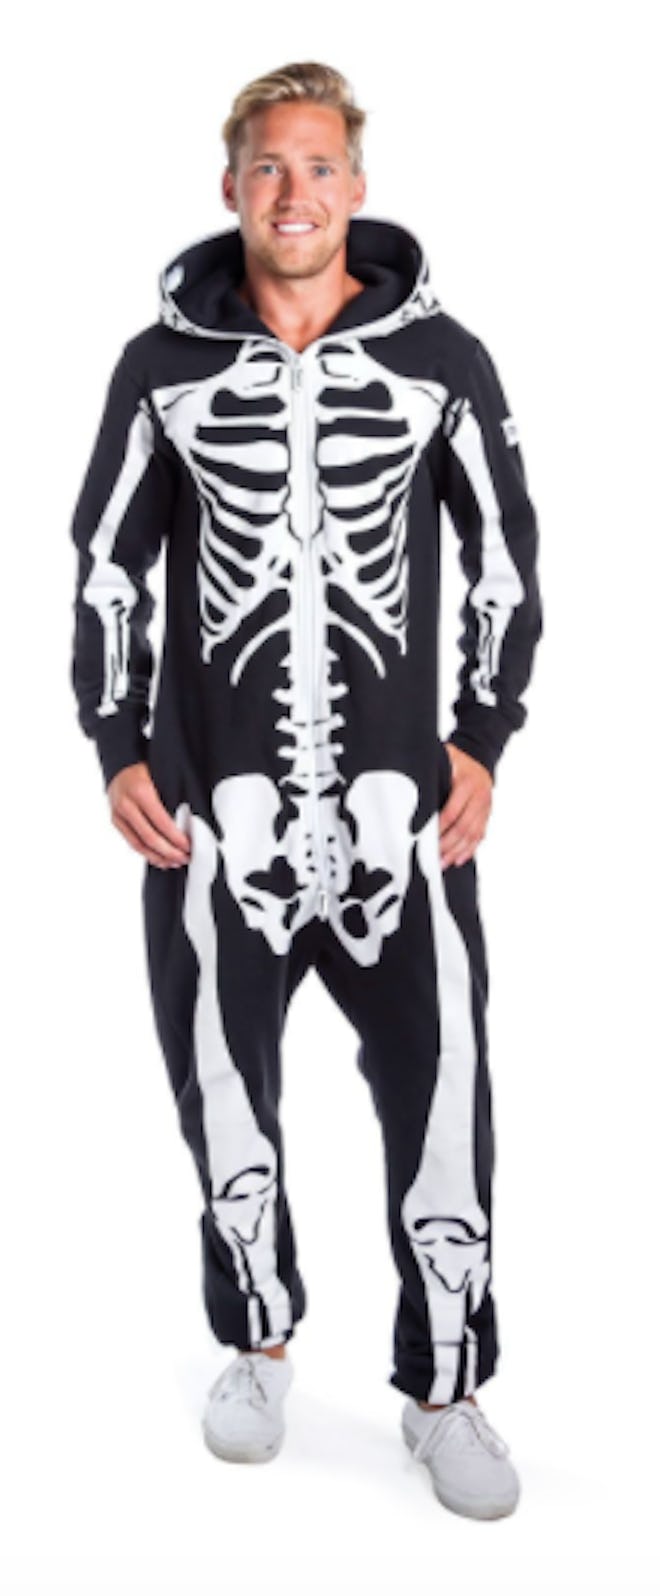 Man wearing skeleton onesie